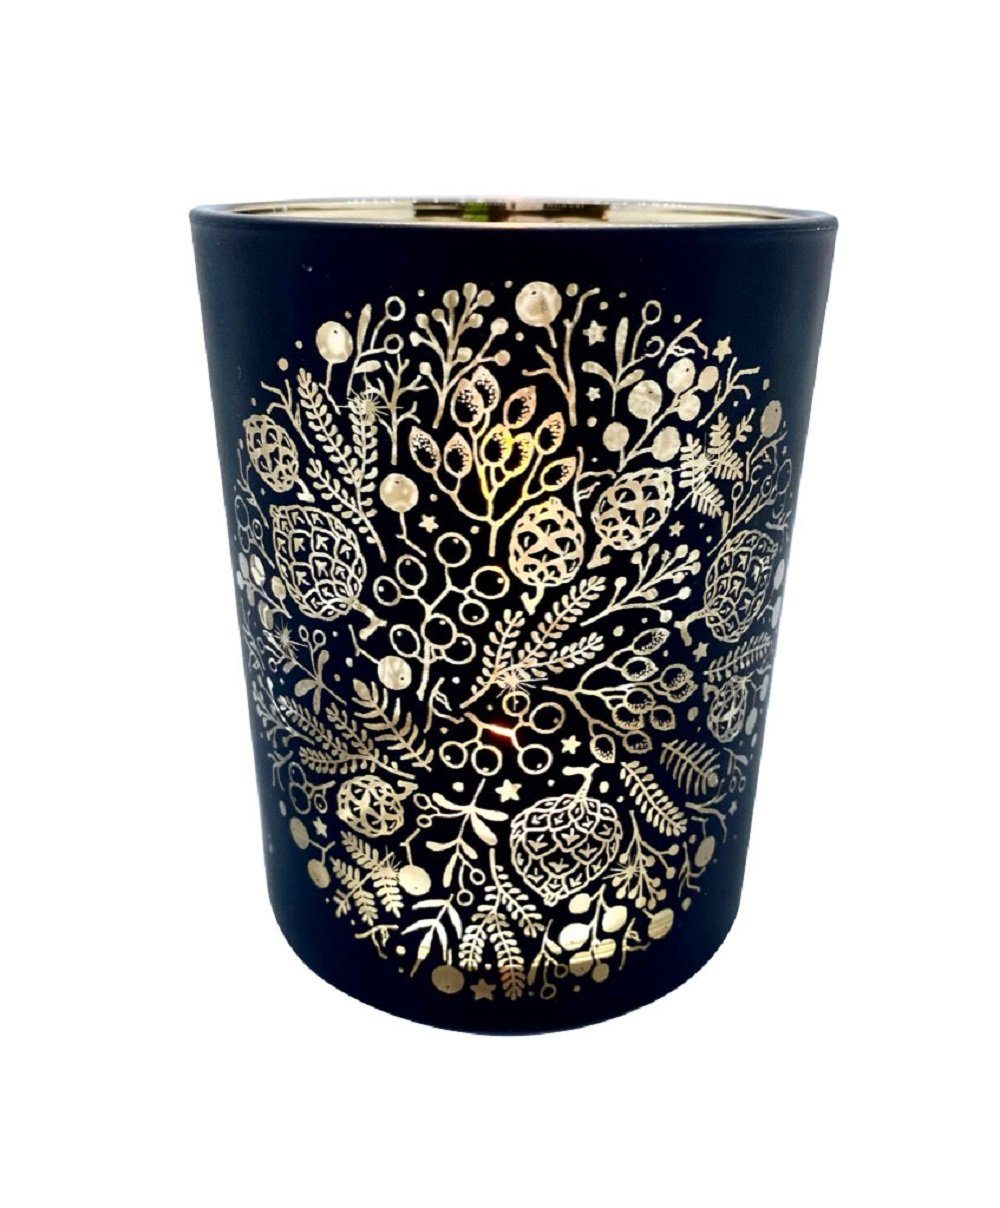 Parts4Living Windlicht Glas Teelichthalter mit Zapfen und Zweigen Teelichtglas Tischdeko Weihnachtsdeko schwarz gold, im edlen Design